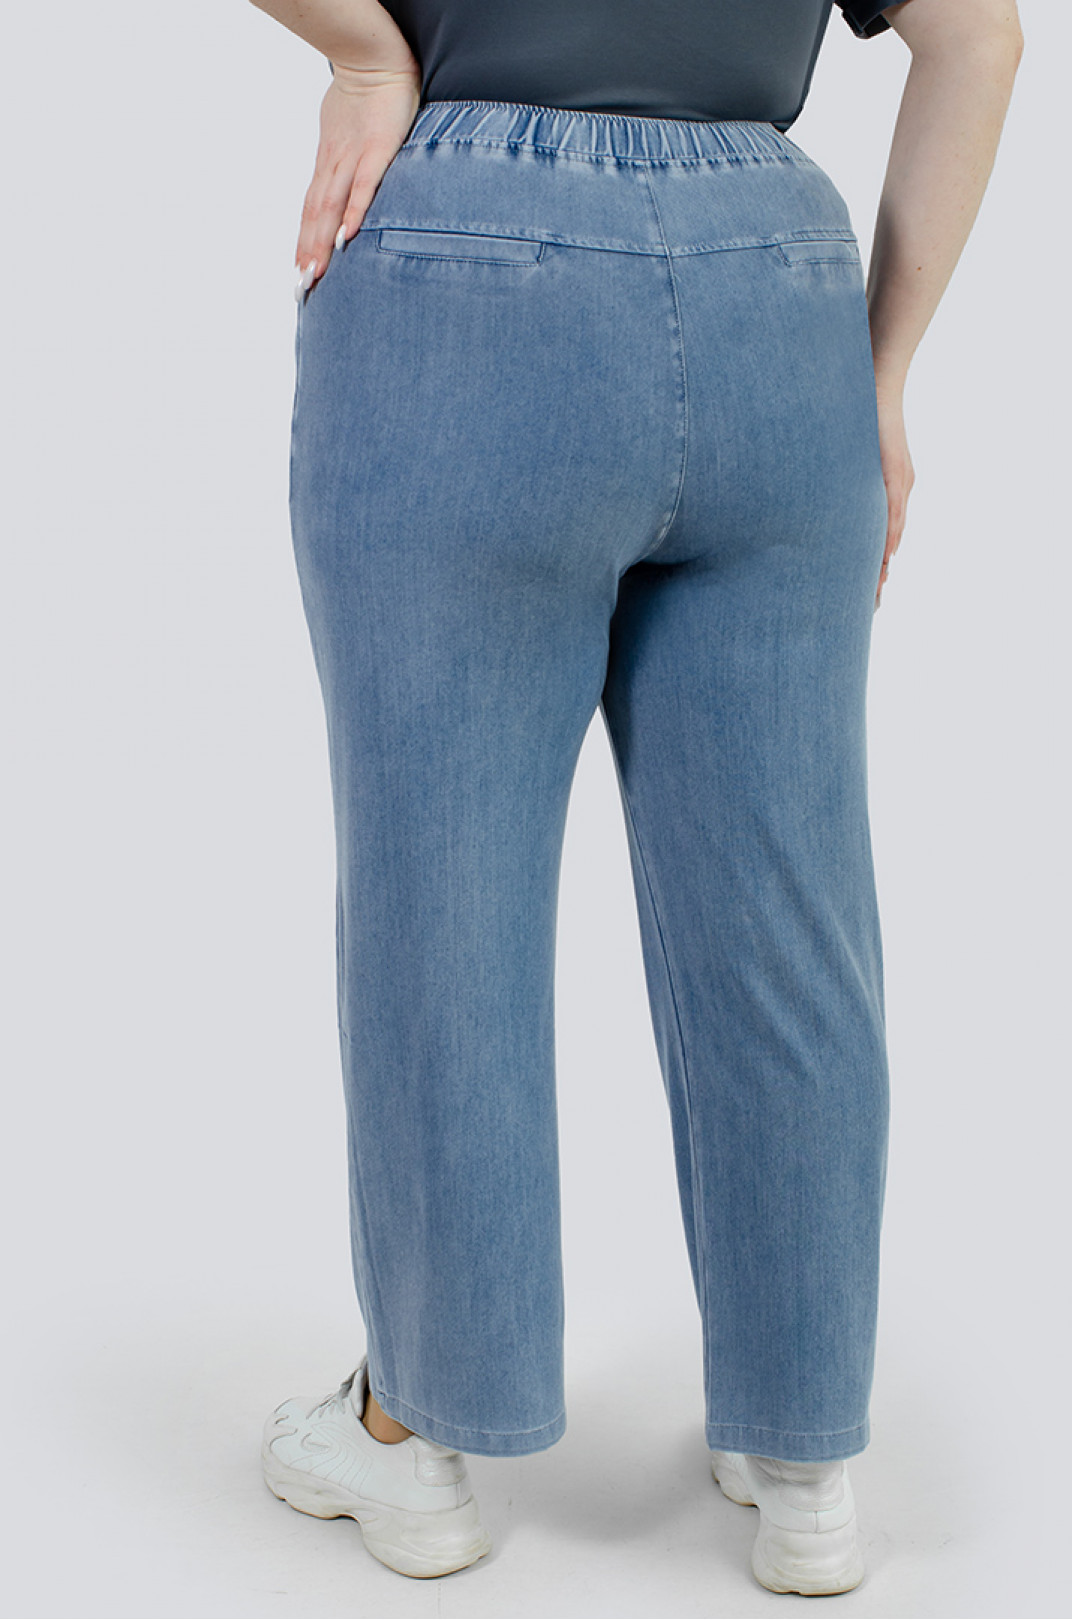 Стильные джинсы больших размеров